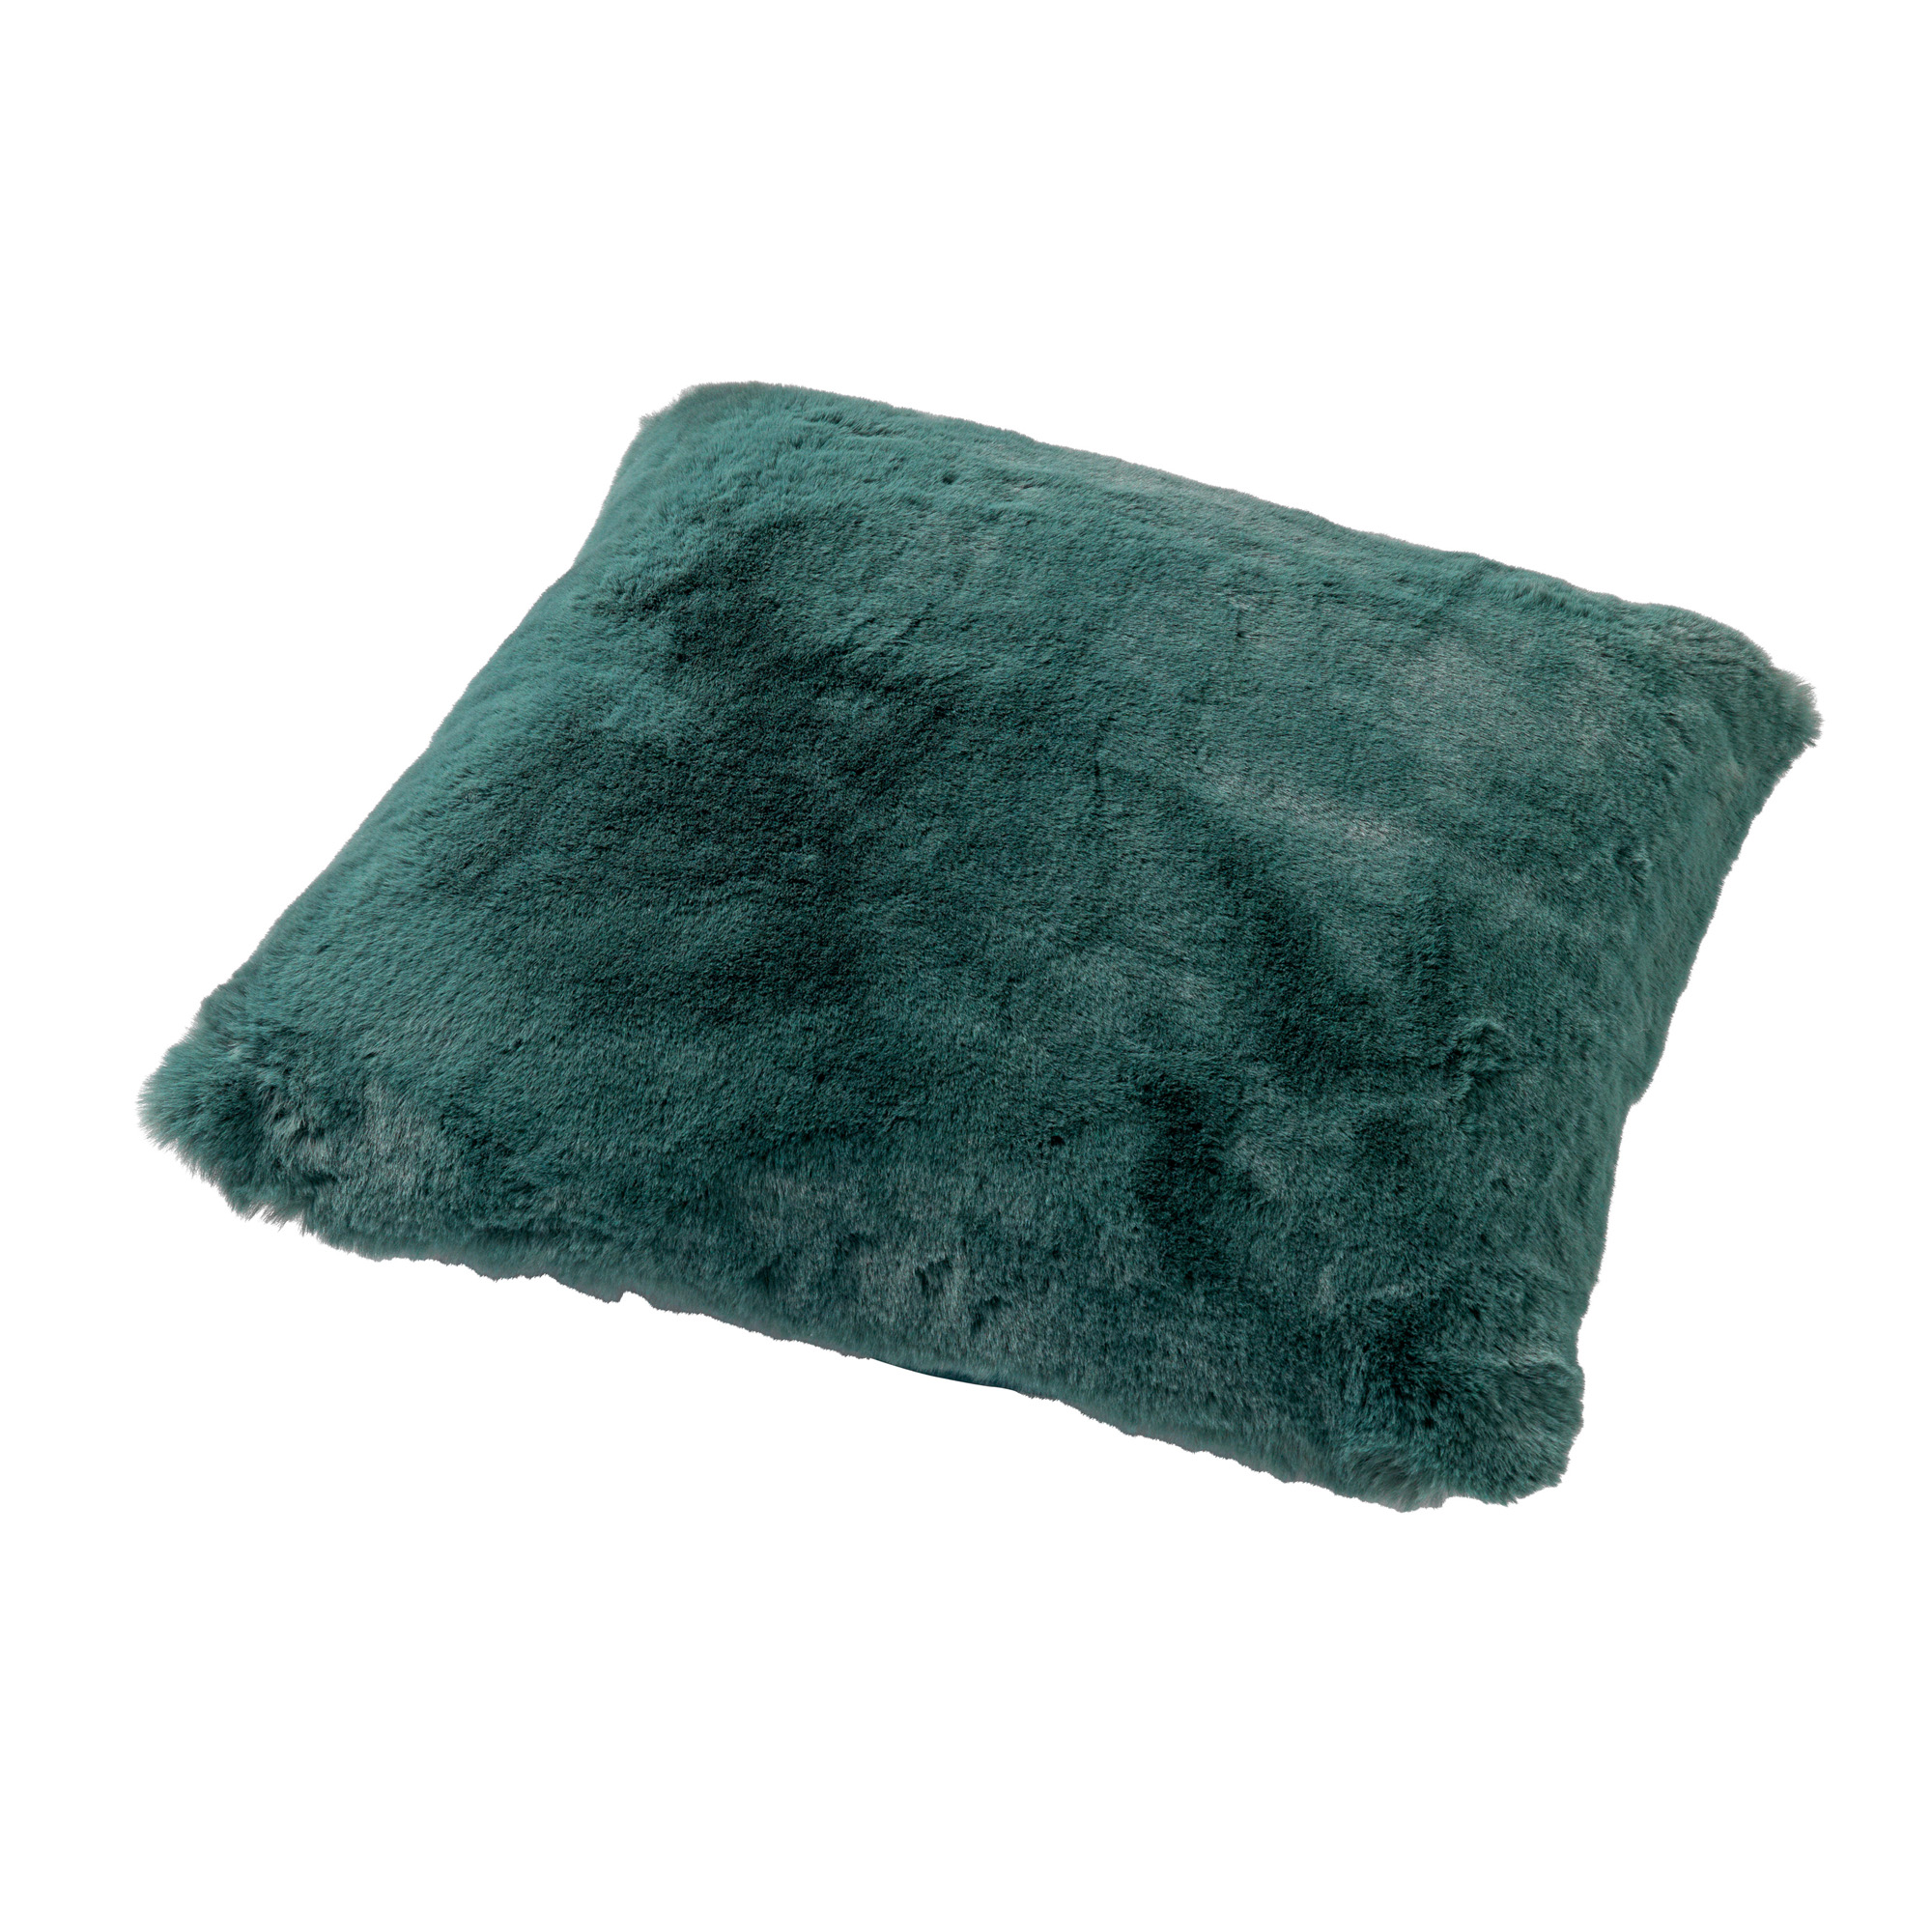 ZAYA - Kussenhoes 45x45 cm - bontlook - effen kleur - Sagebrush Green - groen